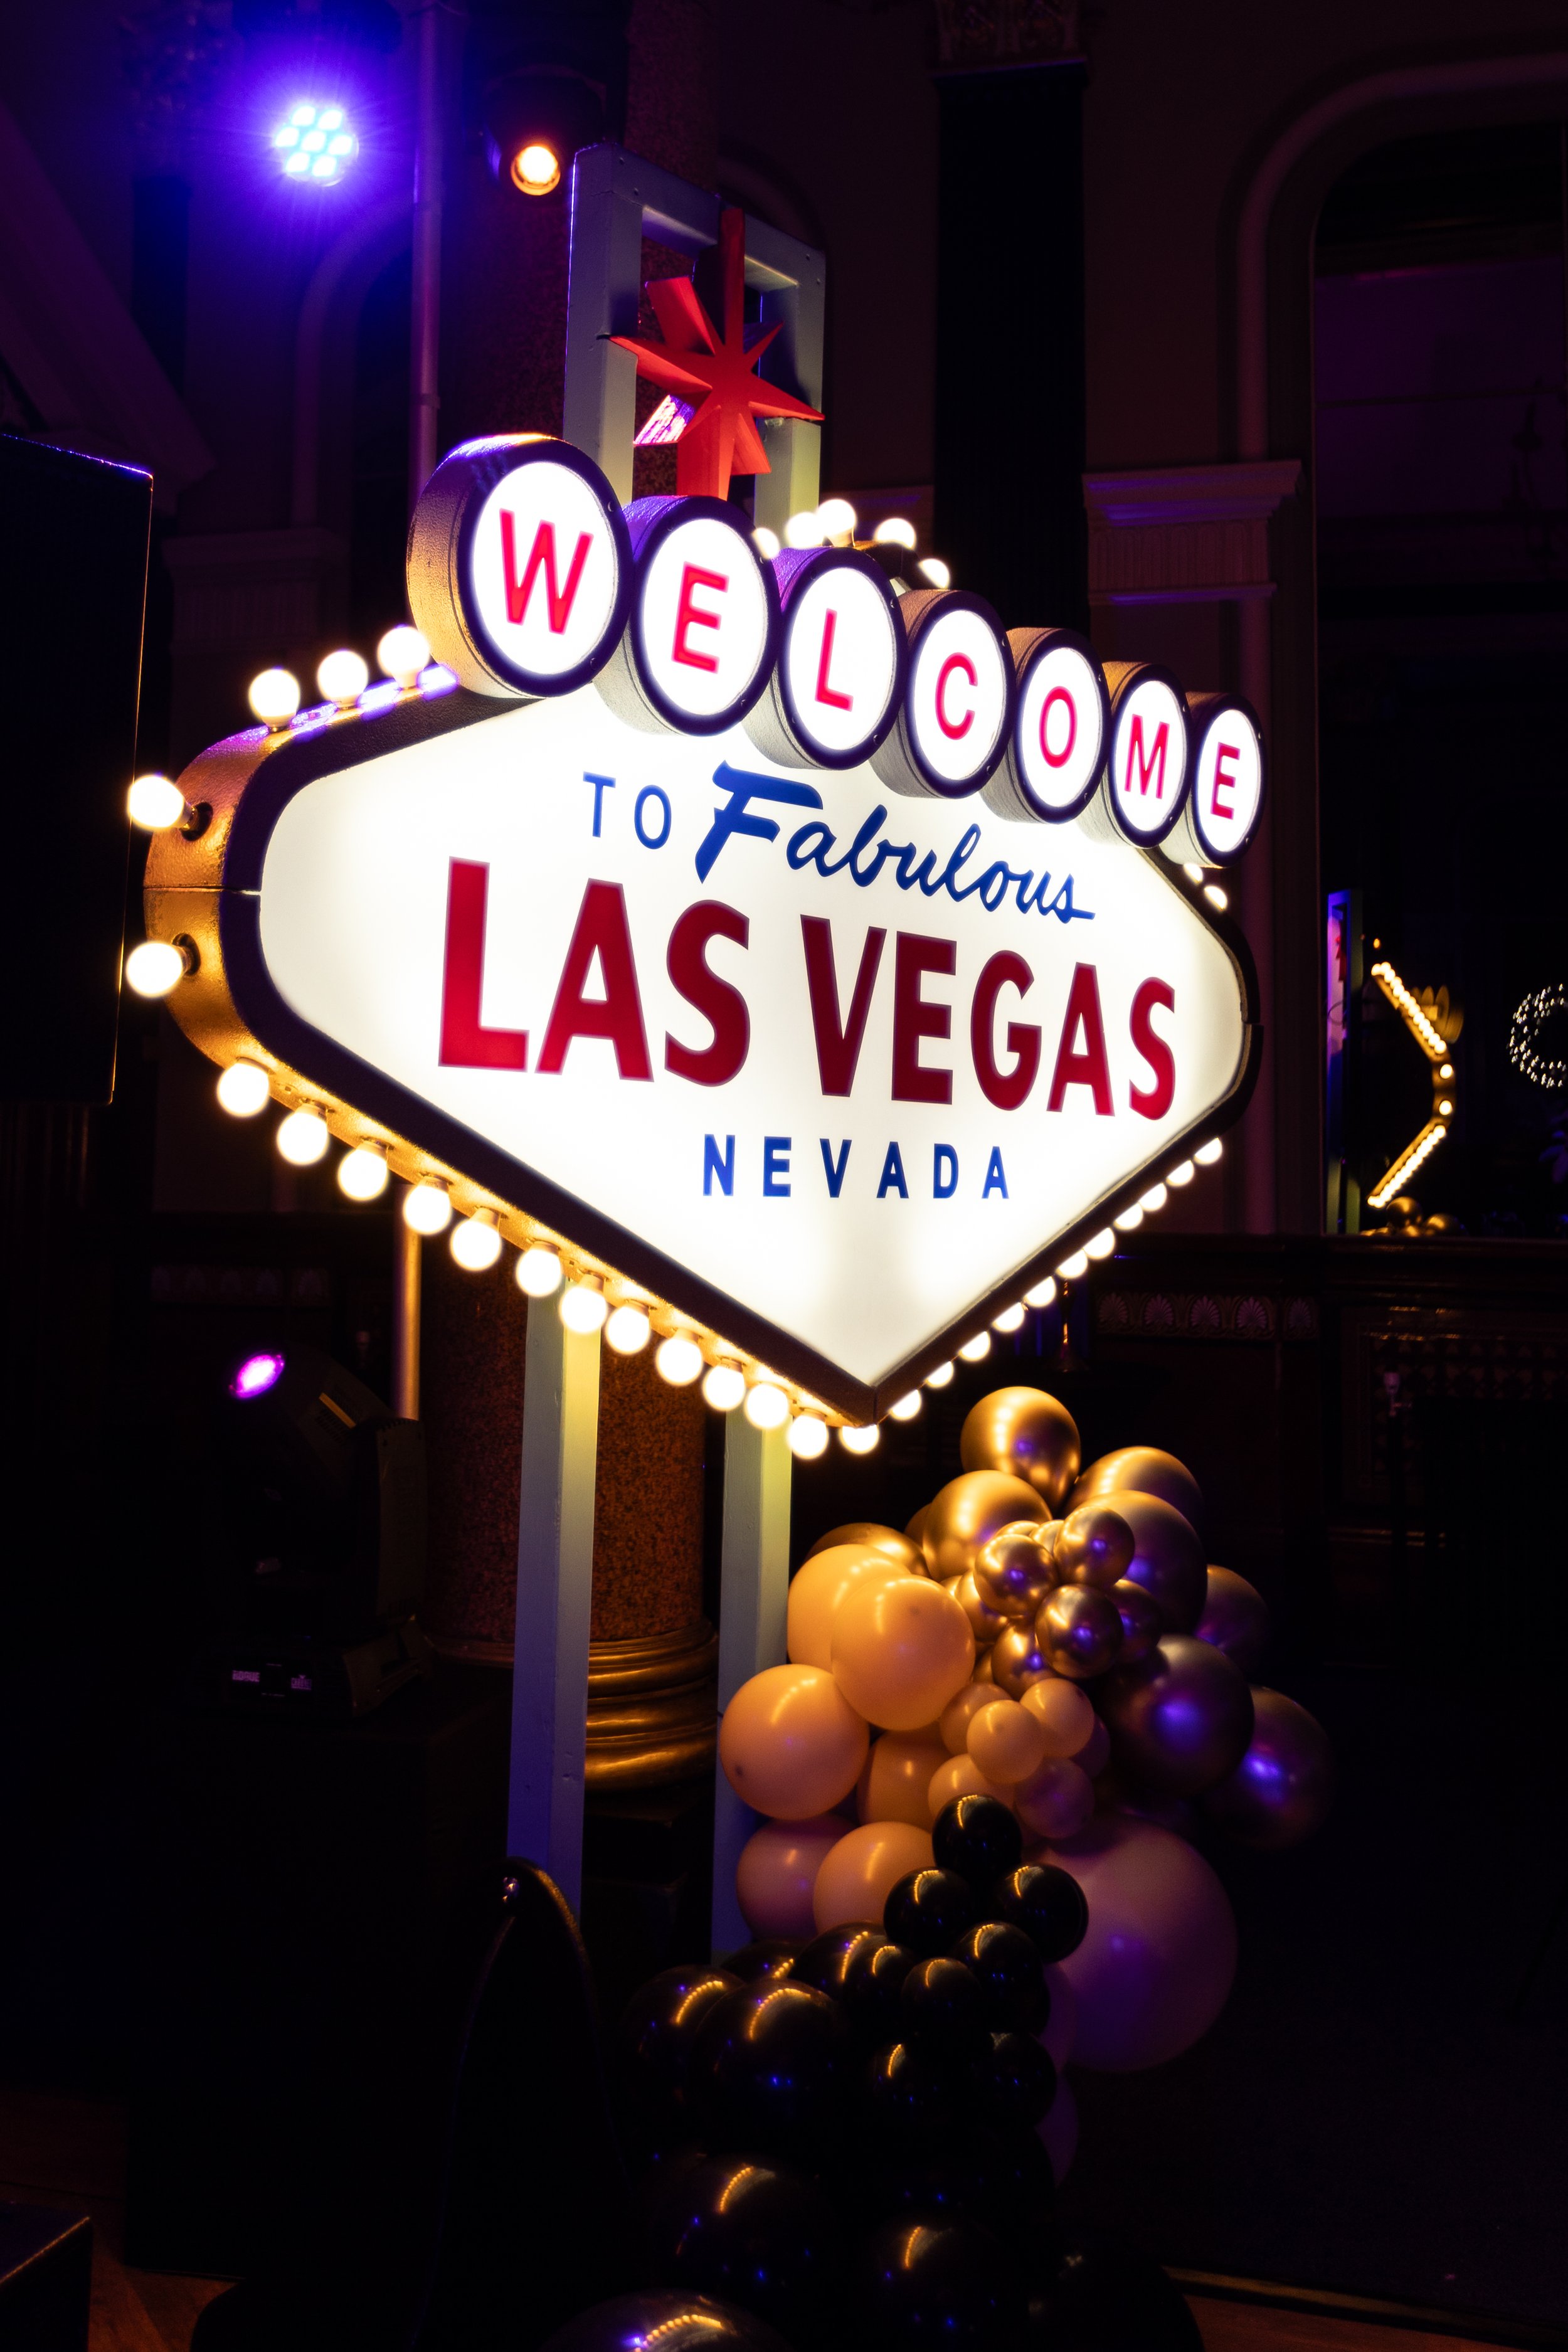 Vegas theme party decor